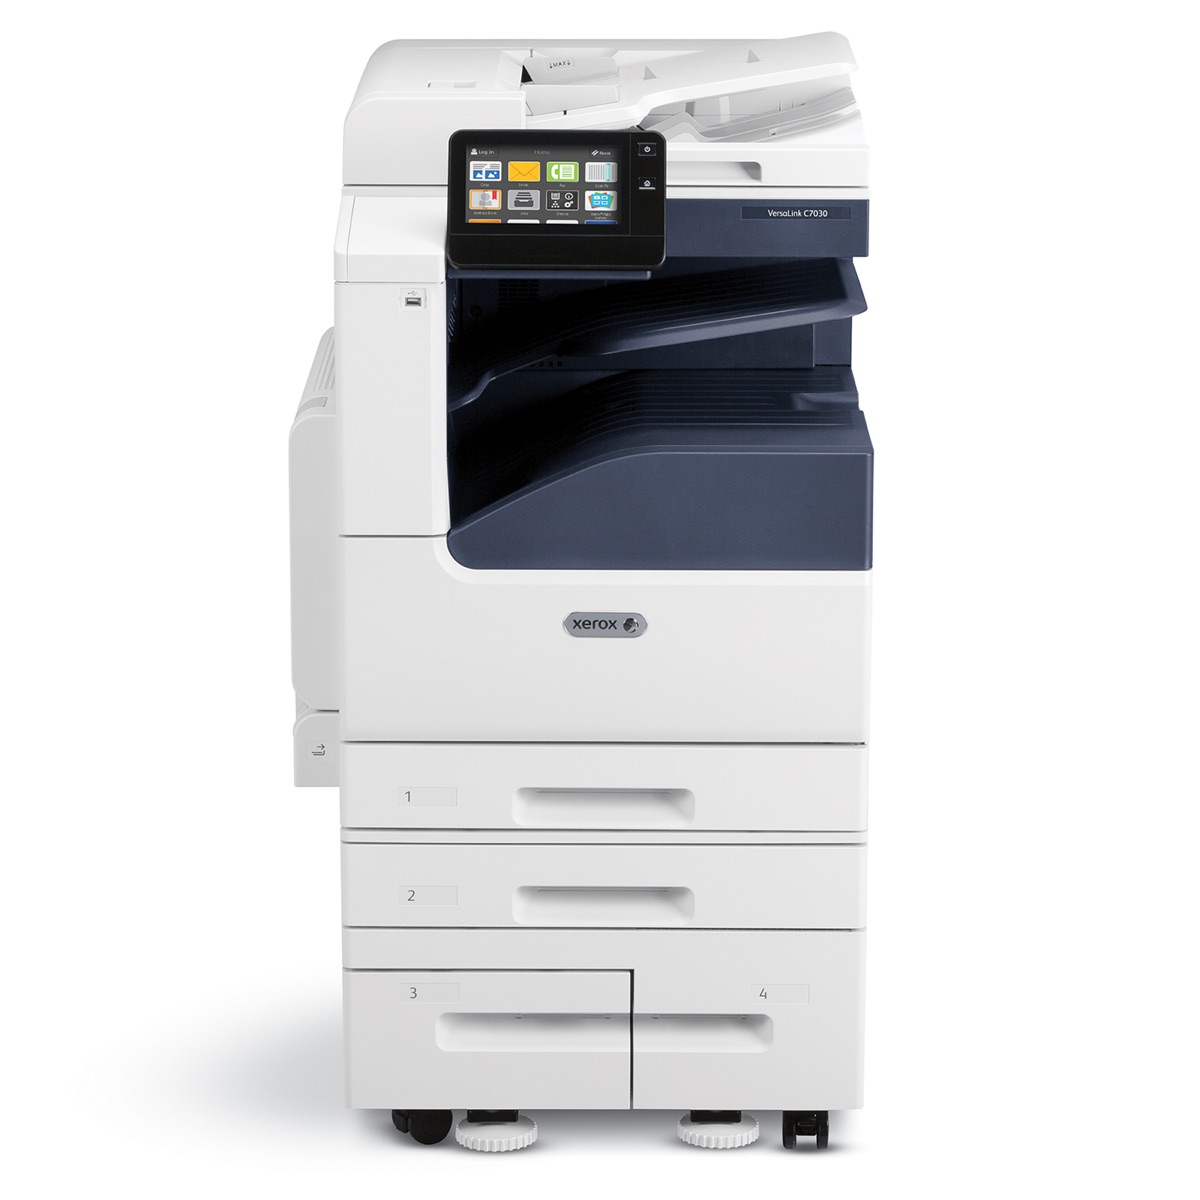 Xerox Copiers:  The Xerox VersaLink C7130/ENGD2 Copier